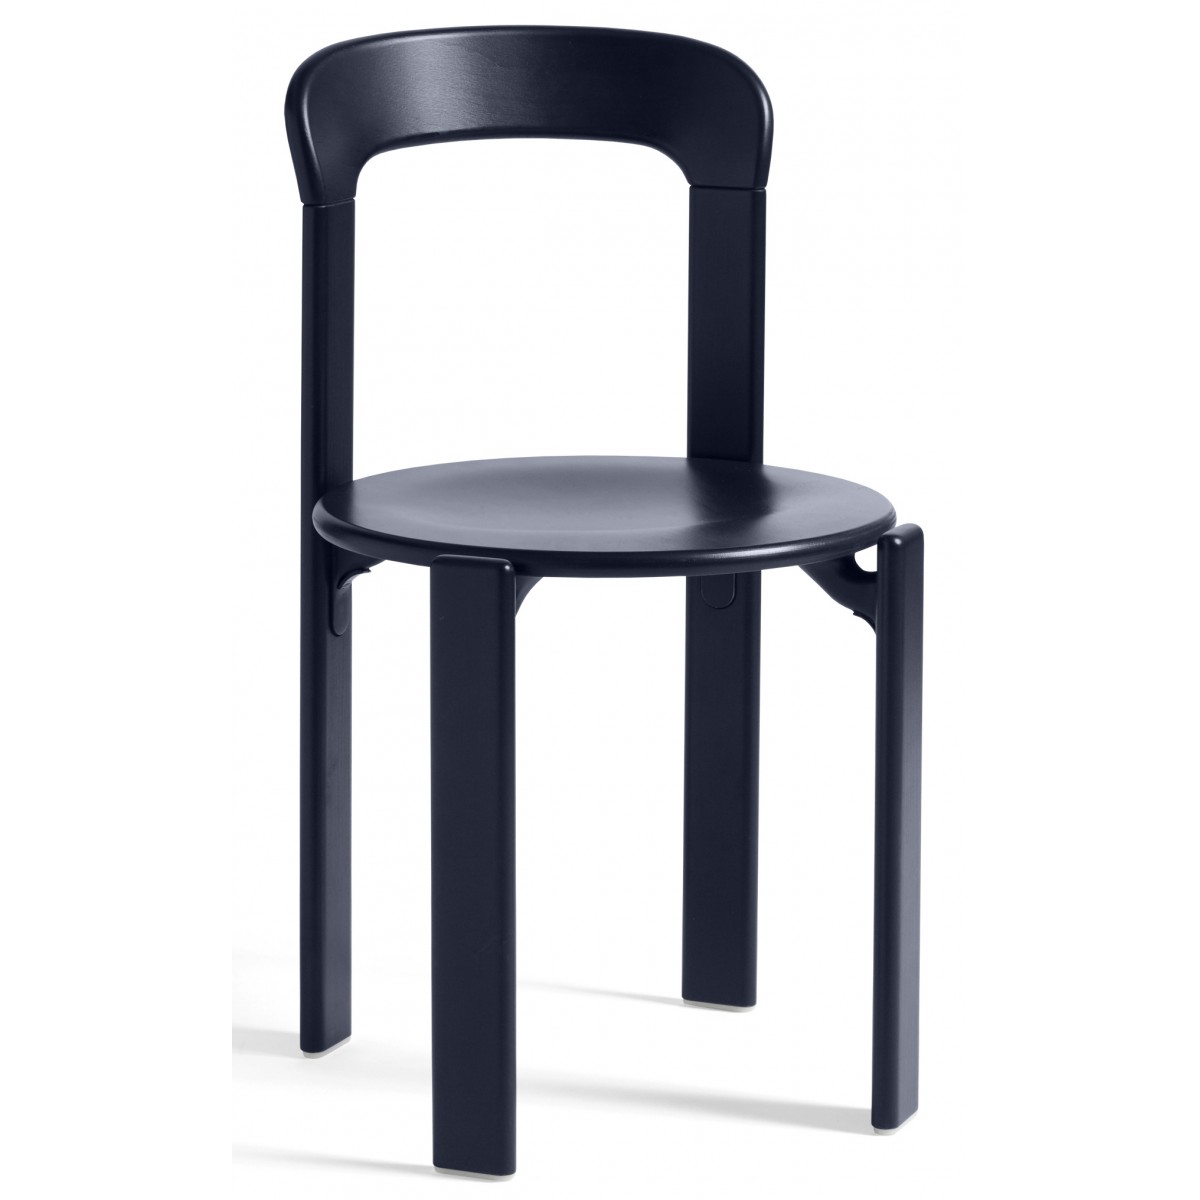 Deep blue - REY chair